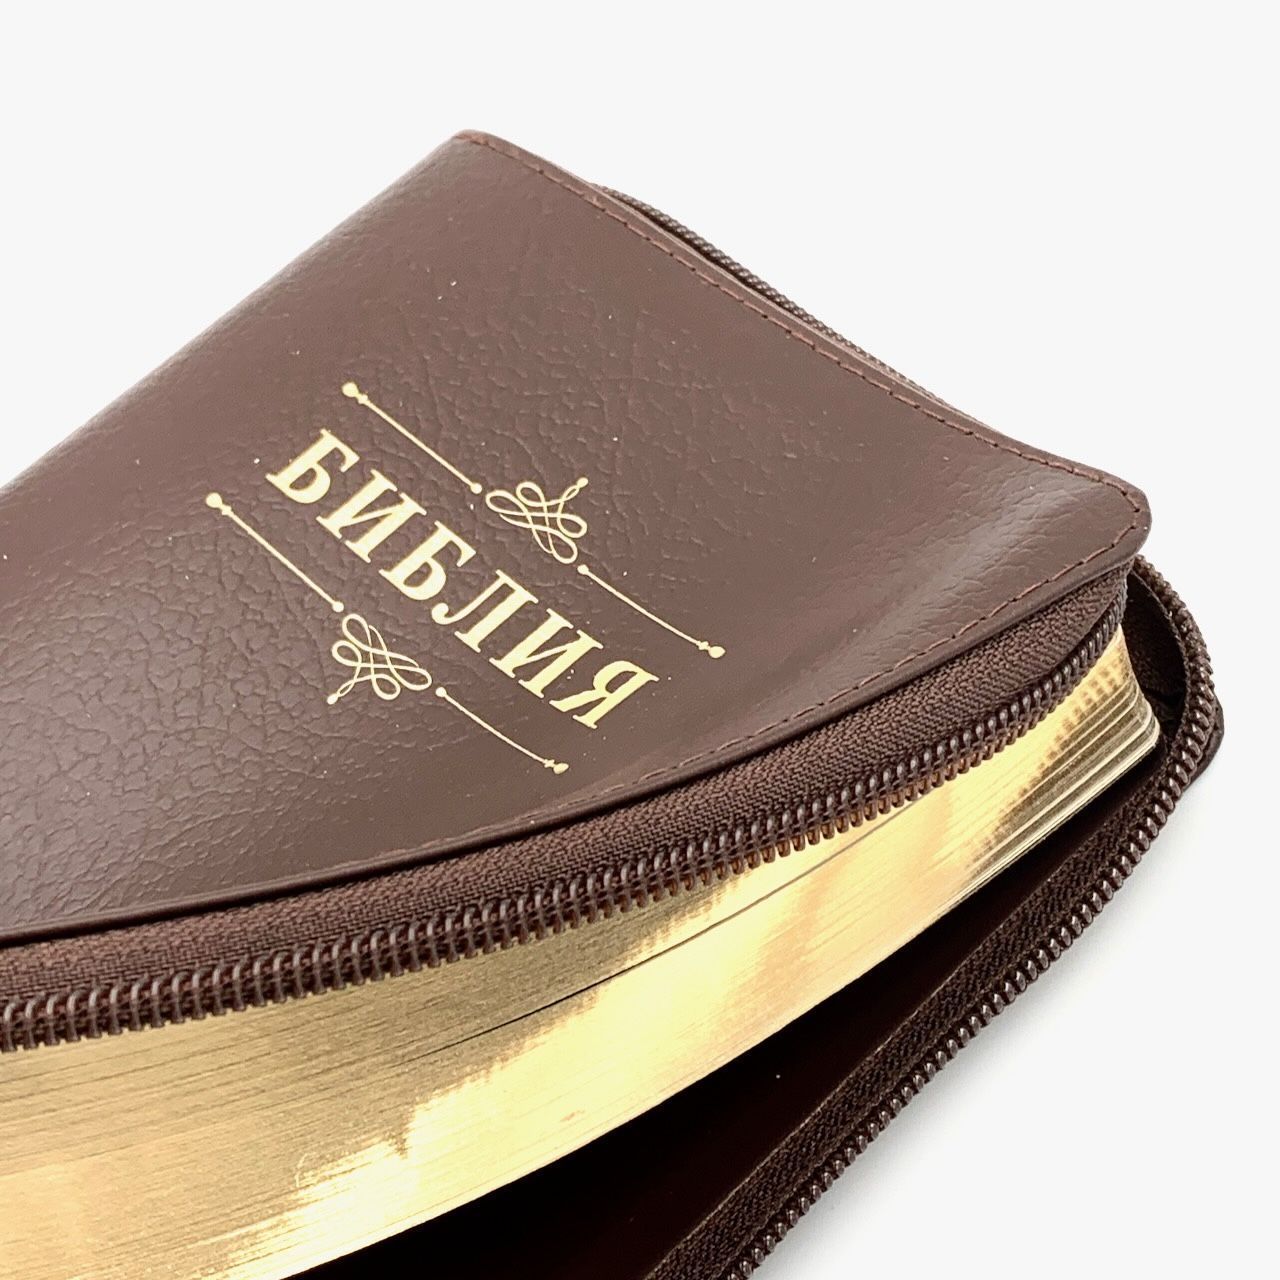 Библия 048 z код 24048-12 дизайн "Библия с вензелем", кожаный переплет на молнии, цвет коричневый пятнистый, формат 125*195 мм